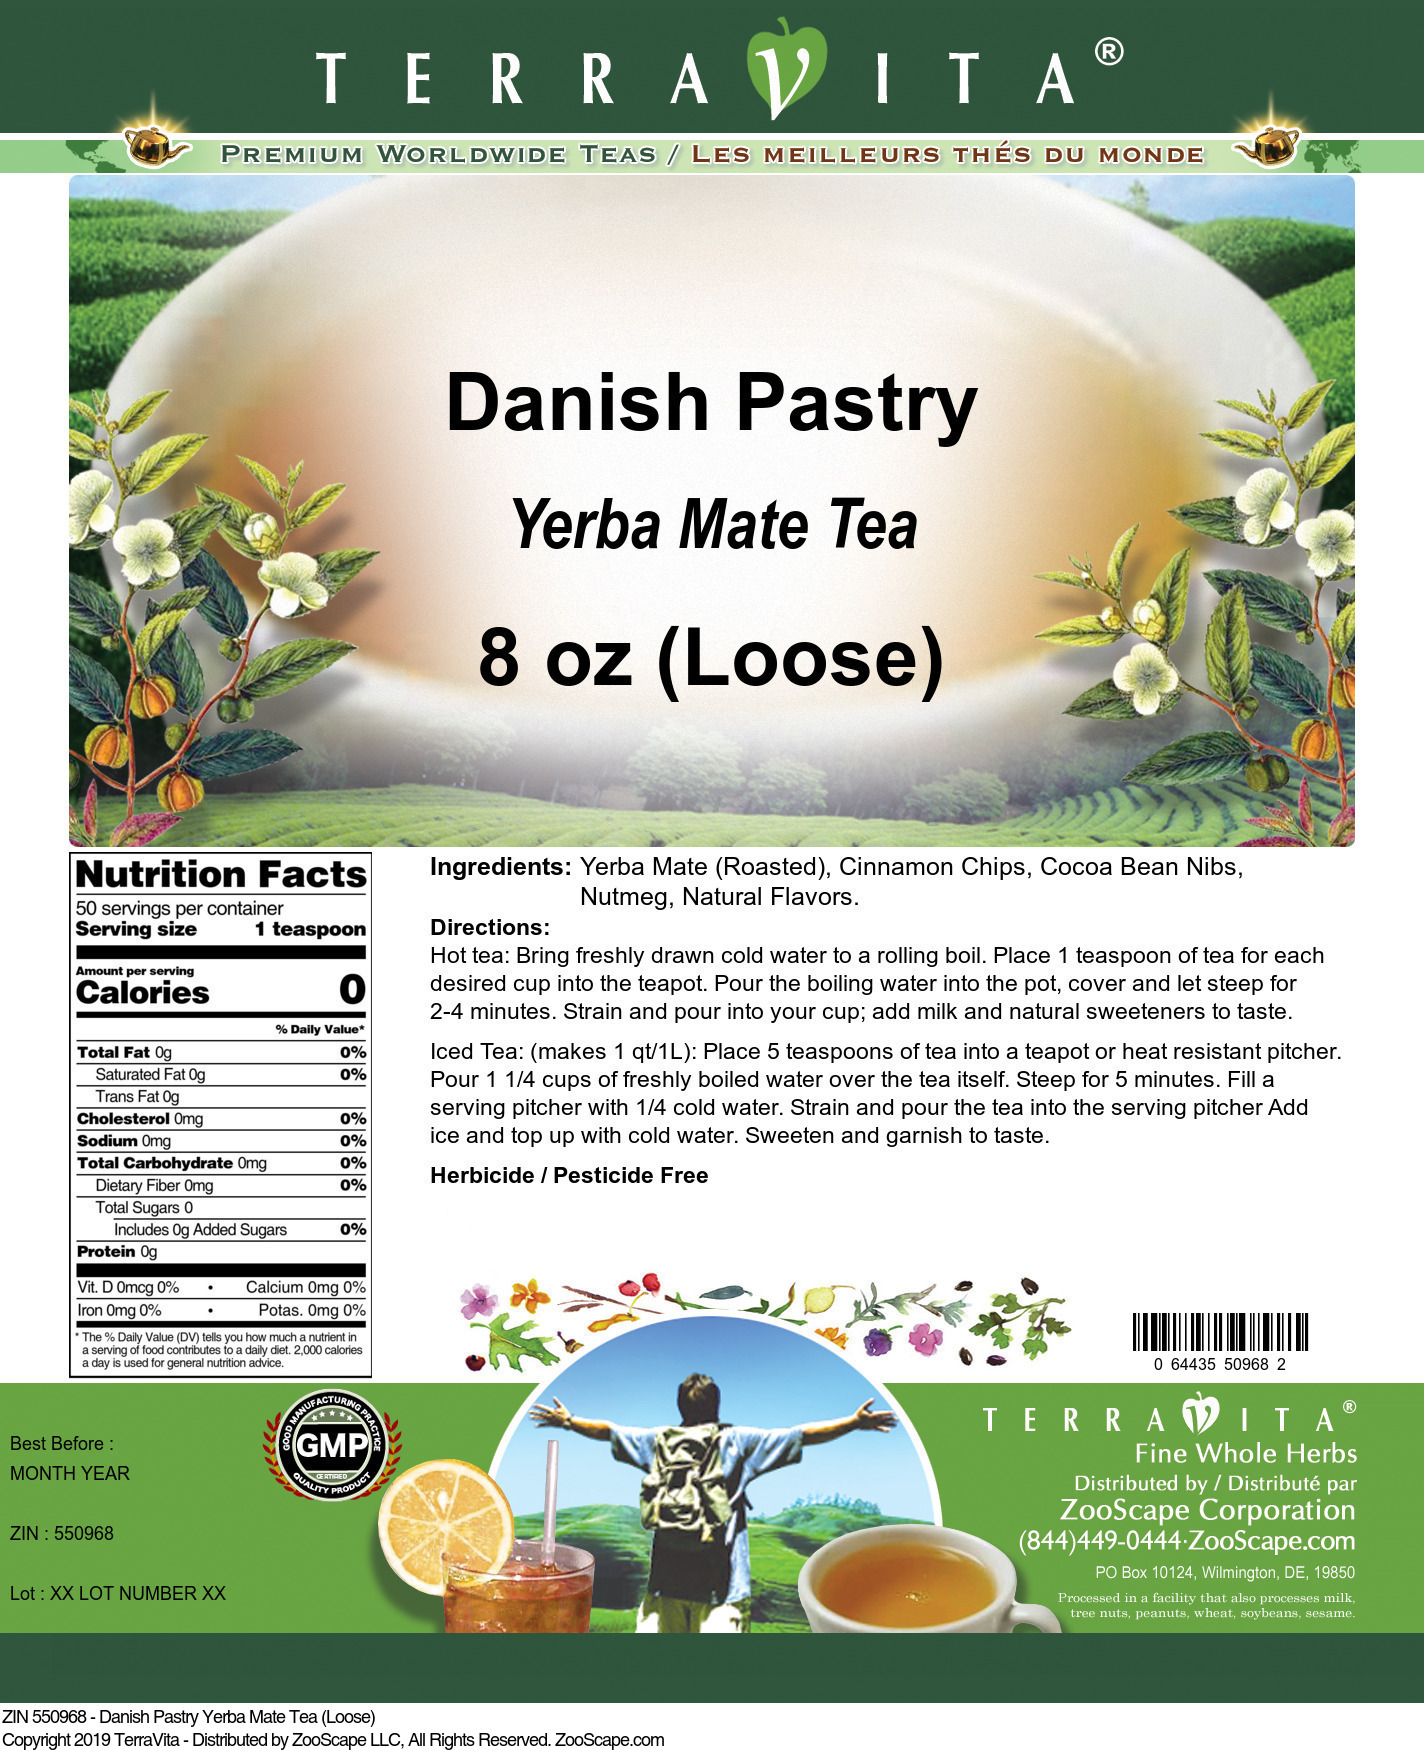 Danish Pastry Yerba Mate Tea (Loose) - Label